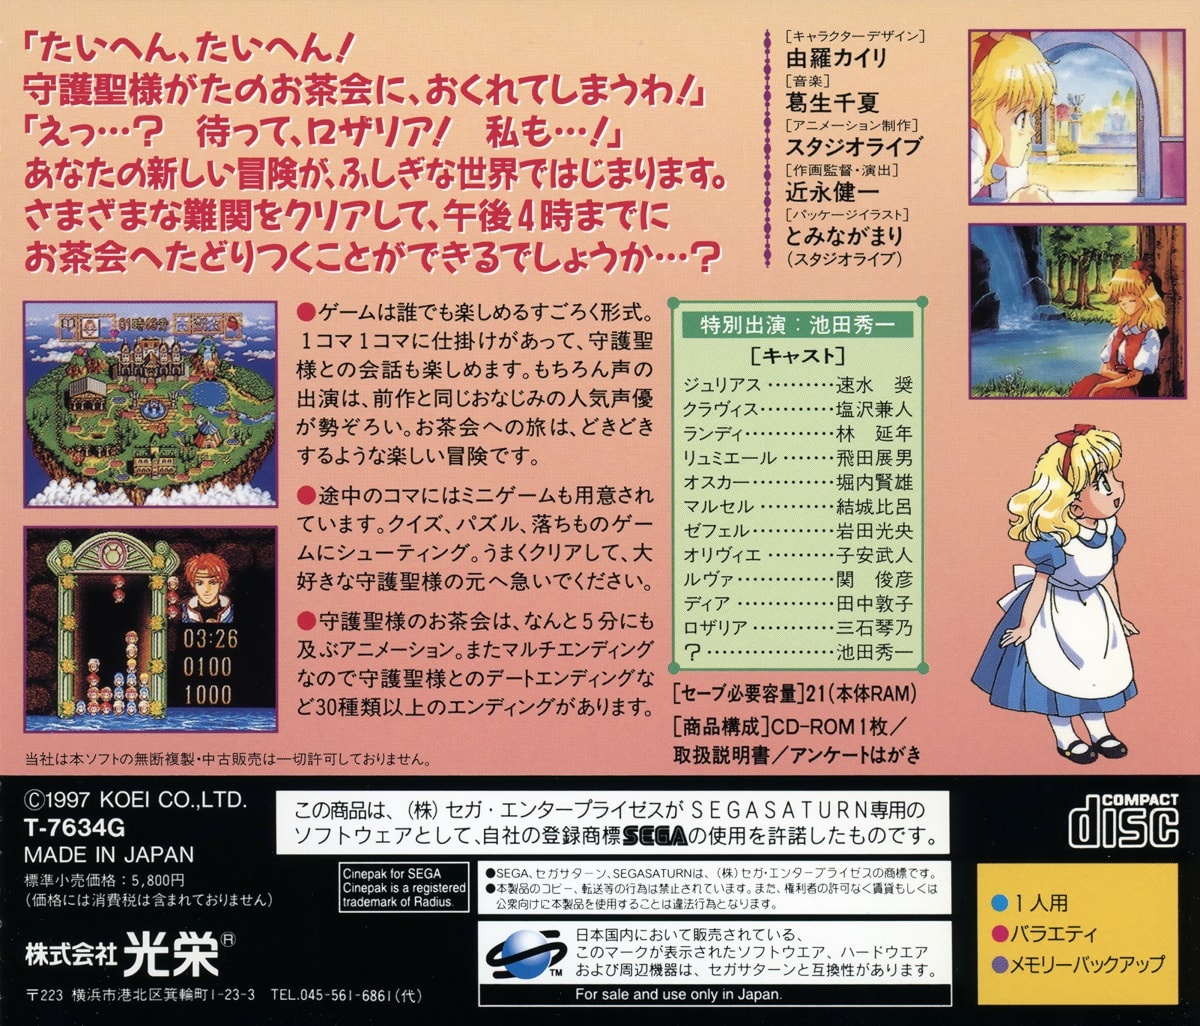 Capa do jogo Fushigi no Kuni no Angelique